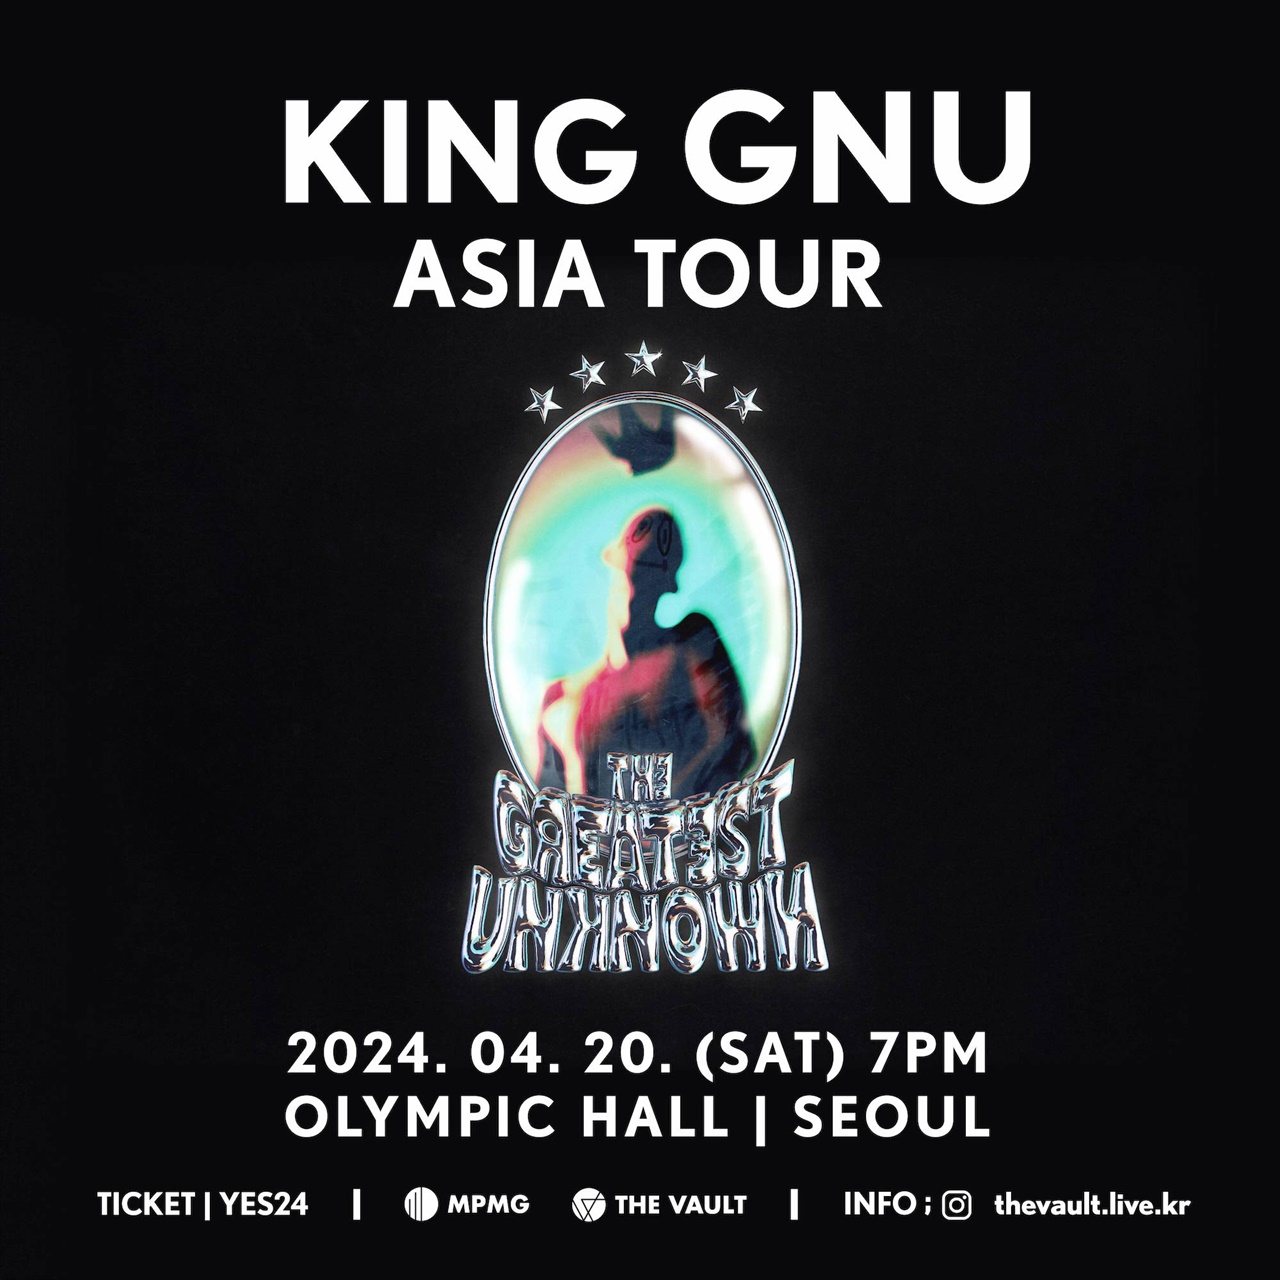  오는 4월 20일, 일본 밴드 킹 누(King Gnu)의 첫 내한 공연이 서울 송파구 올림픽홀에서 열린다.